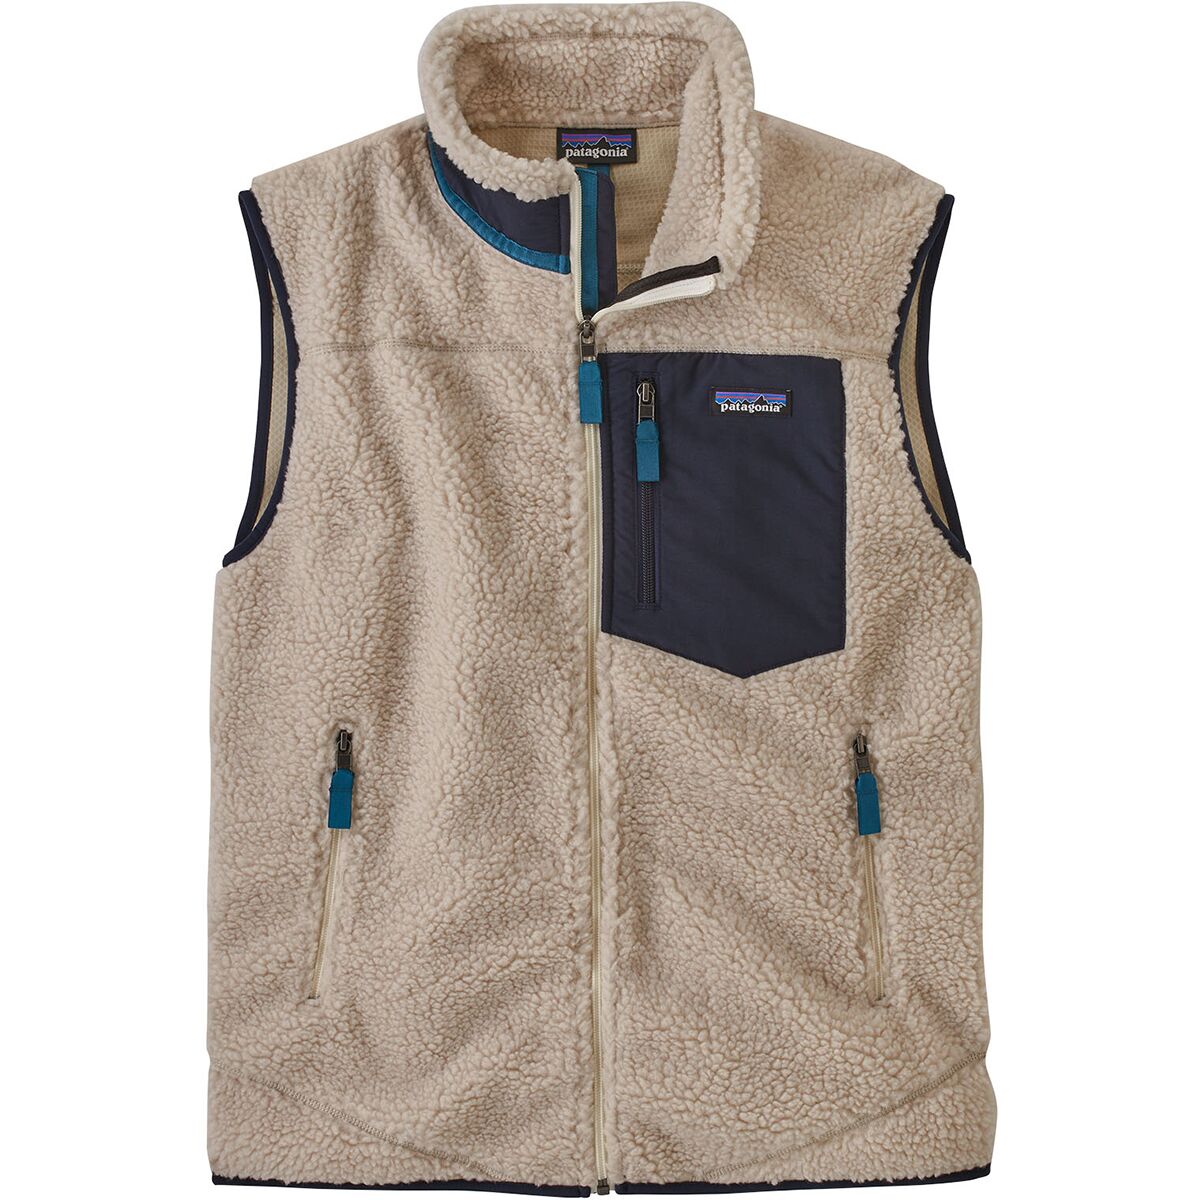 Patagonia Classic Retro-X Vest - Men's - Clothing